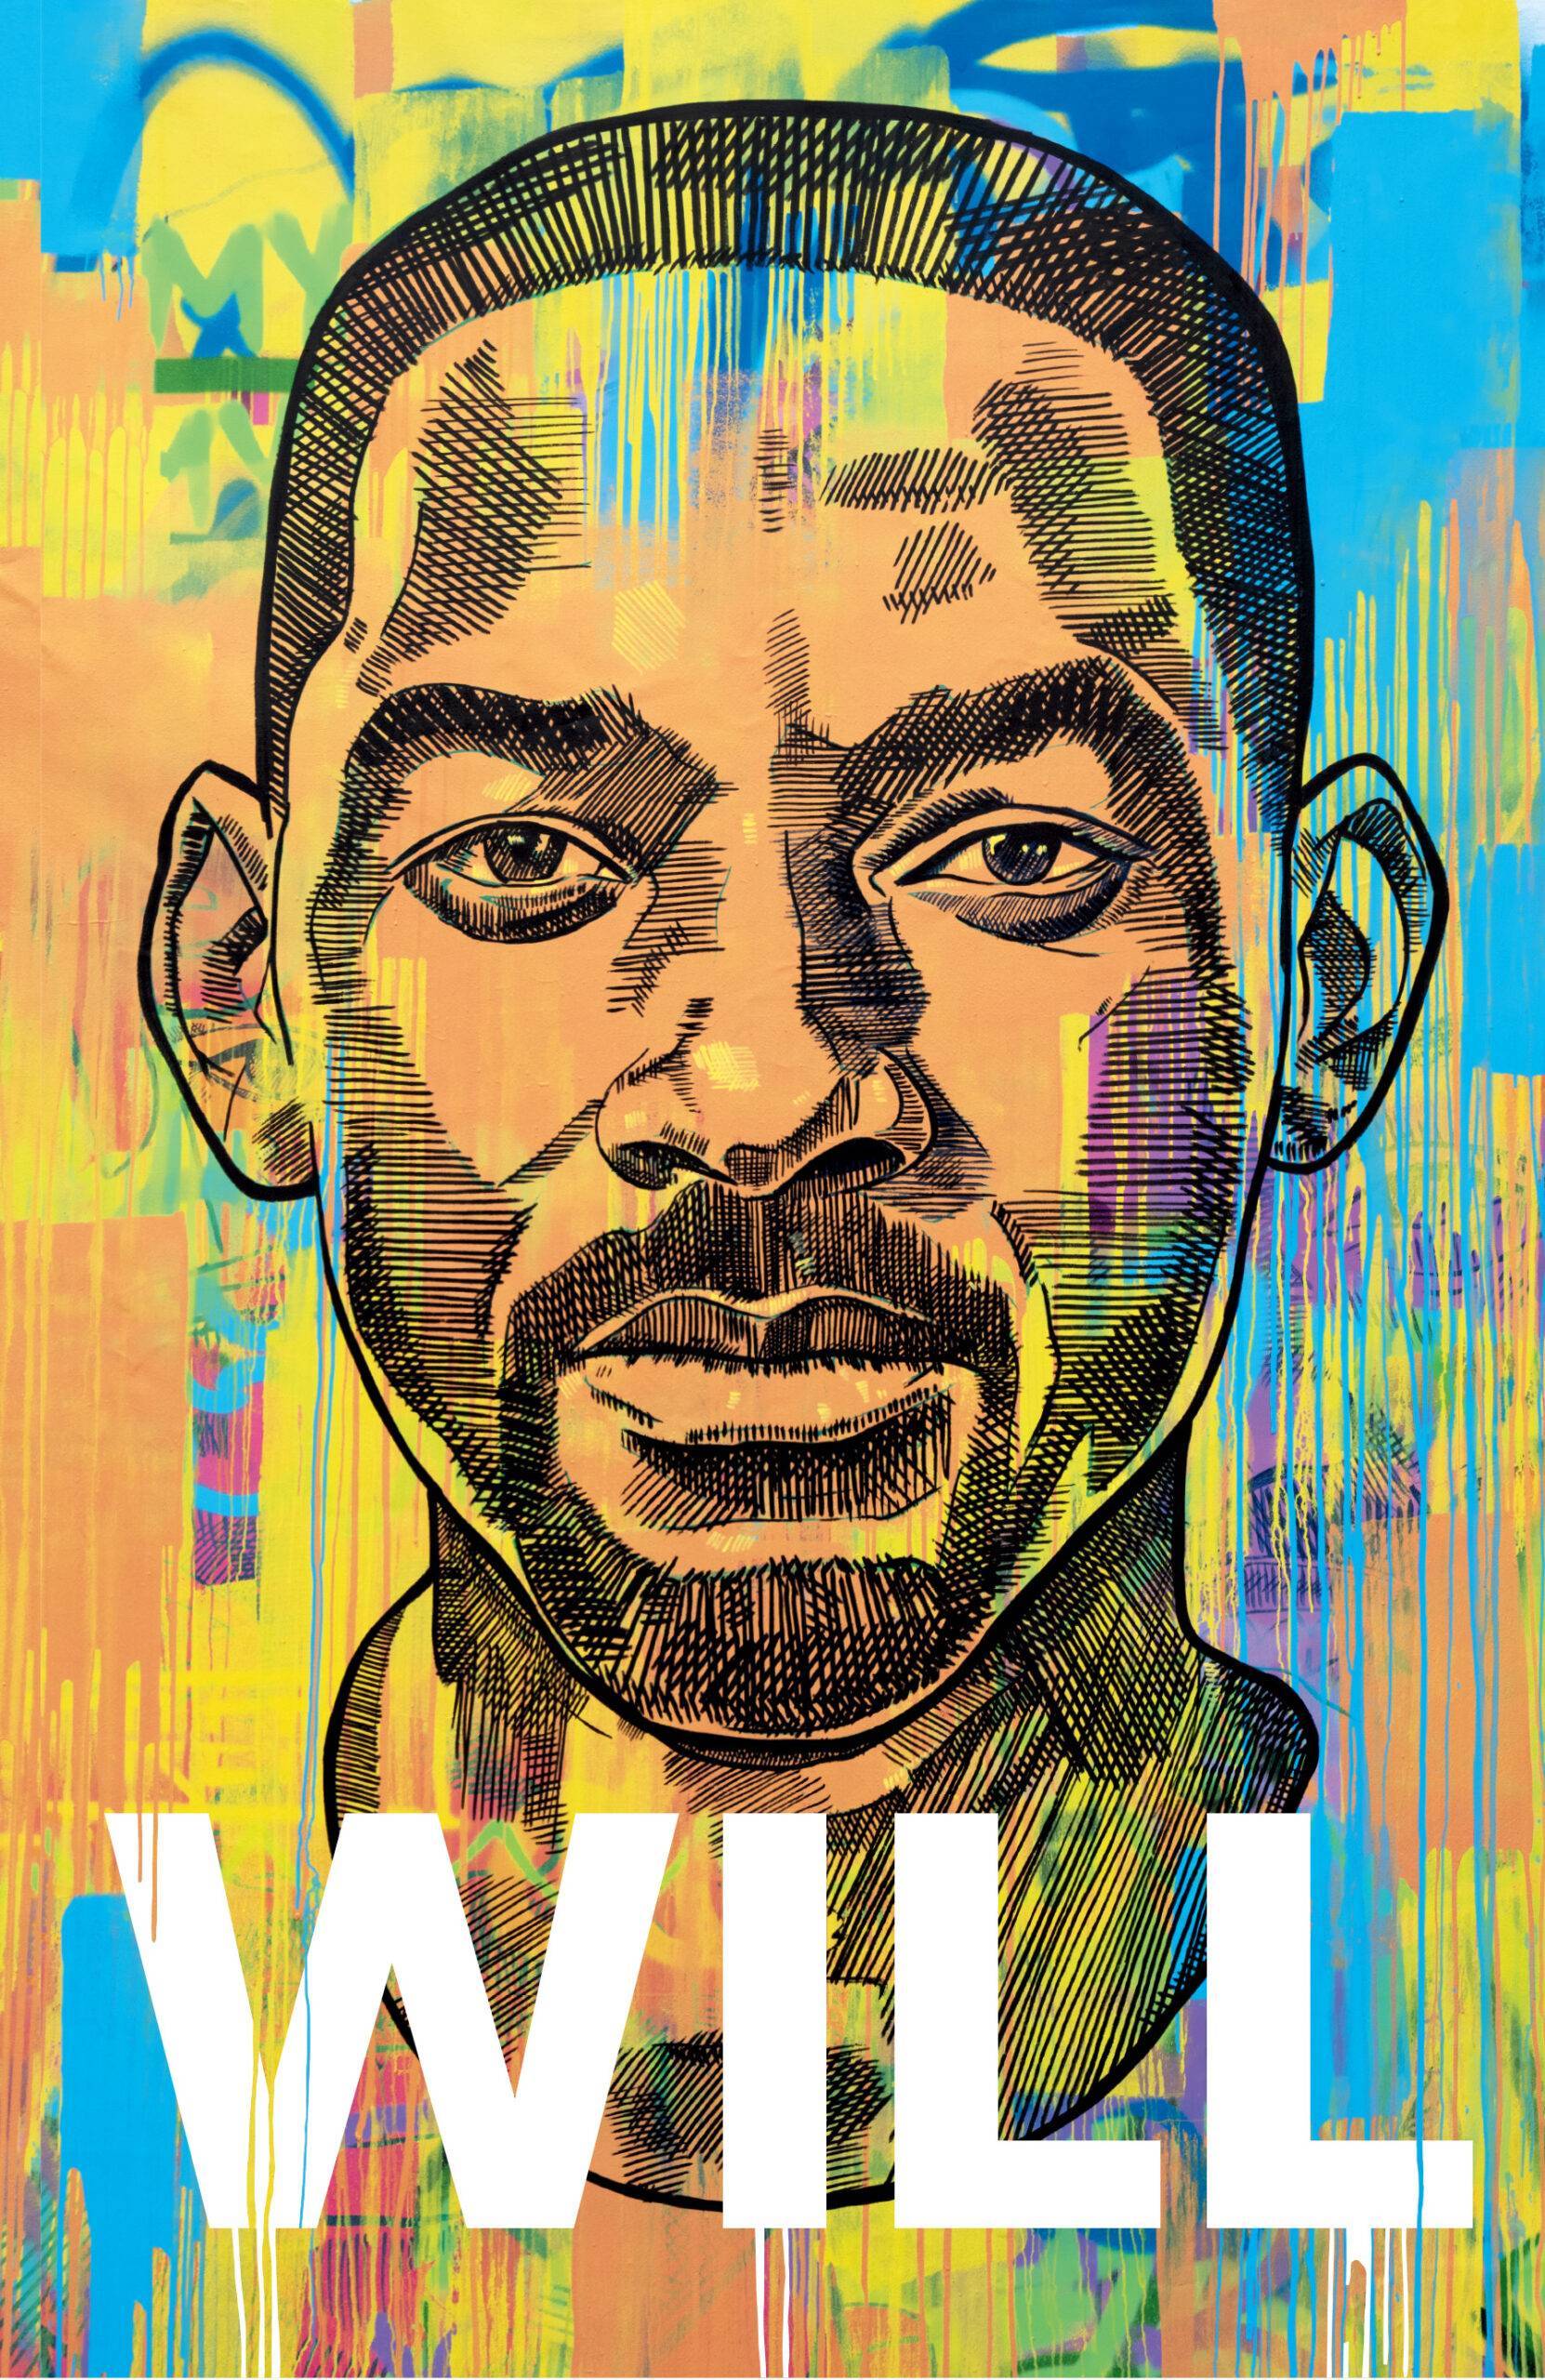 Will, autobiografia lui Will Smith scrisă împreună cu Mark Manson, este de azi în librării